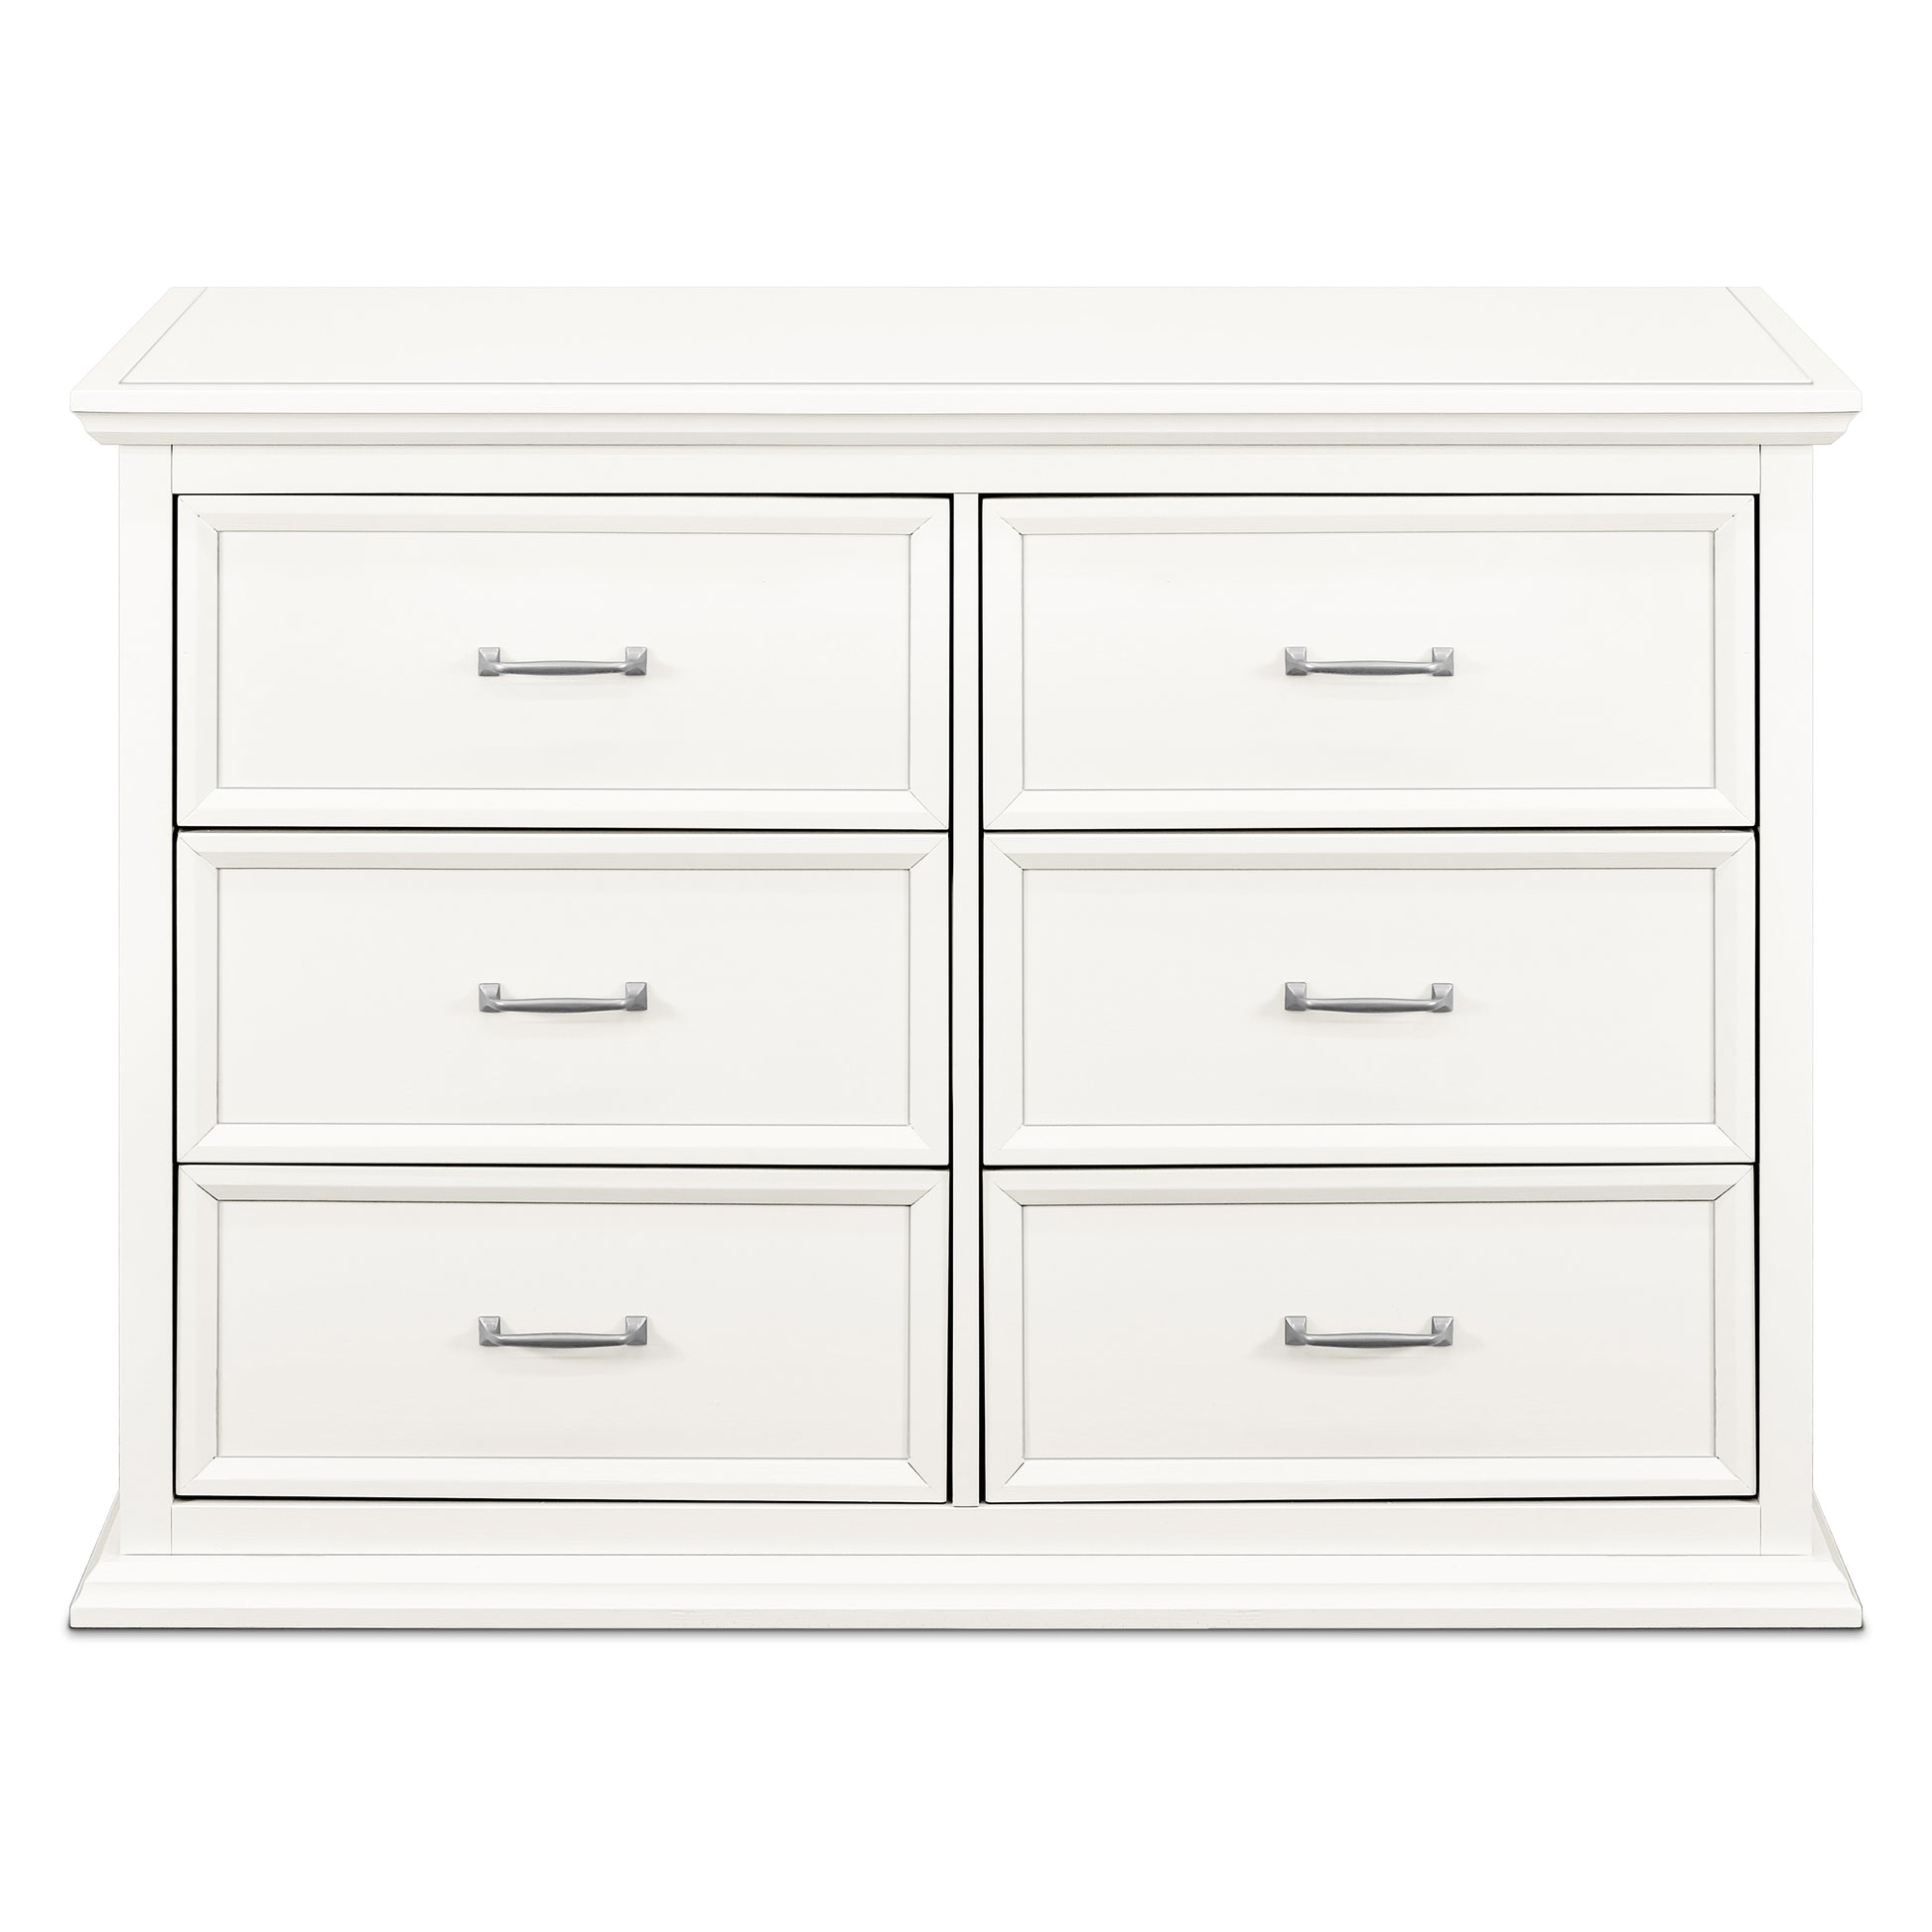 Namesake Foothill-Louis 6-Drawer Dresser - Warm White